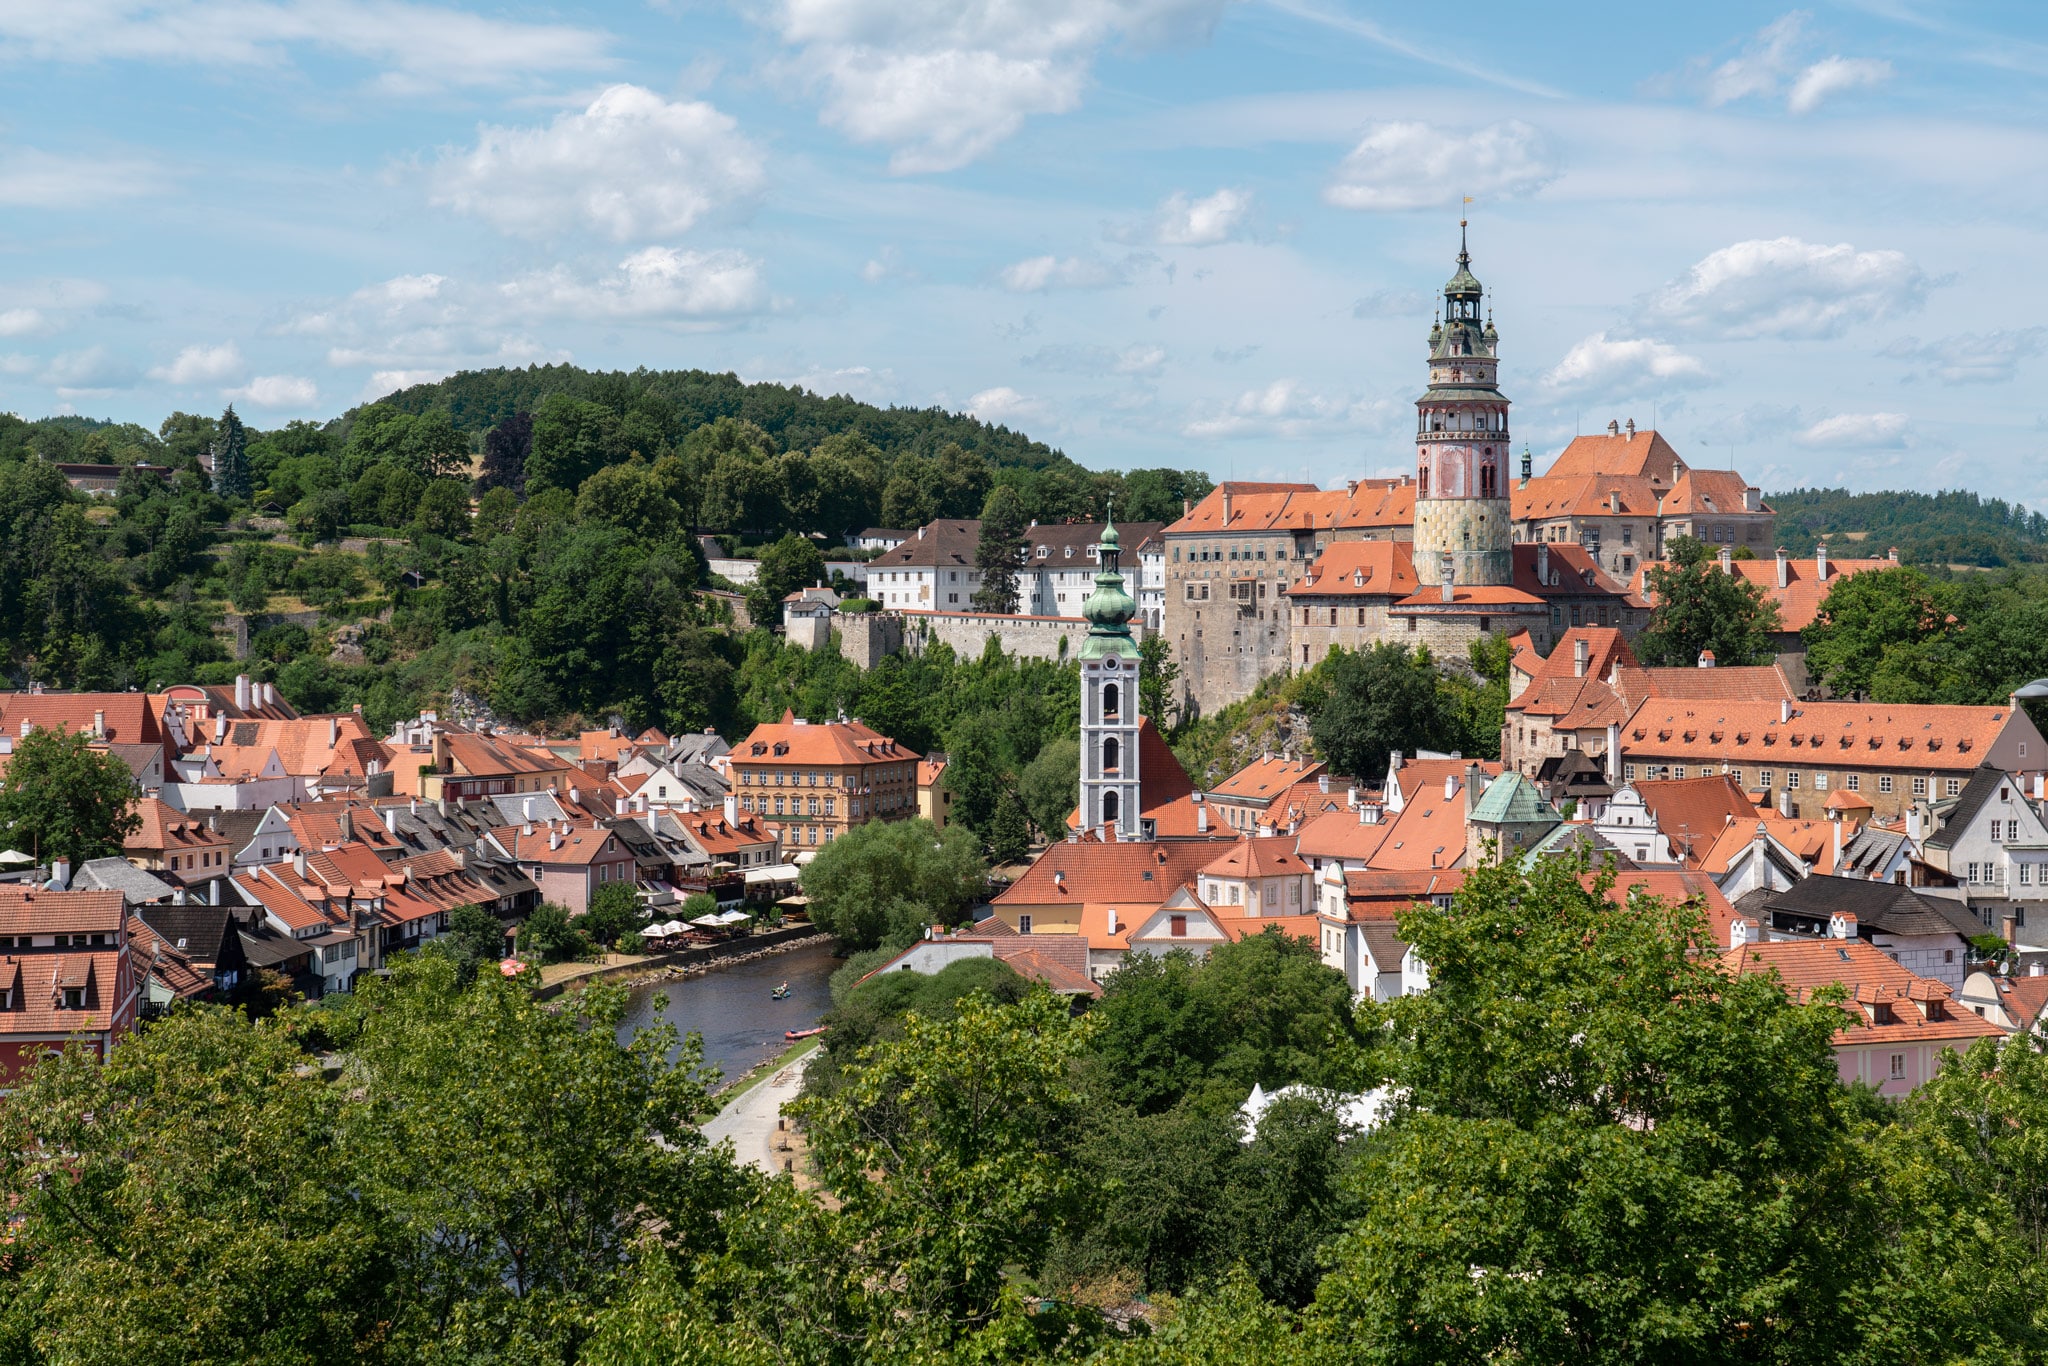 Cesky Krumlov is South Bohemia's fairytale town